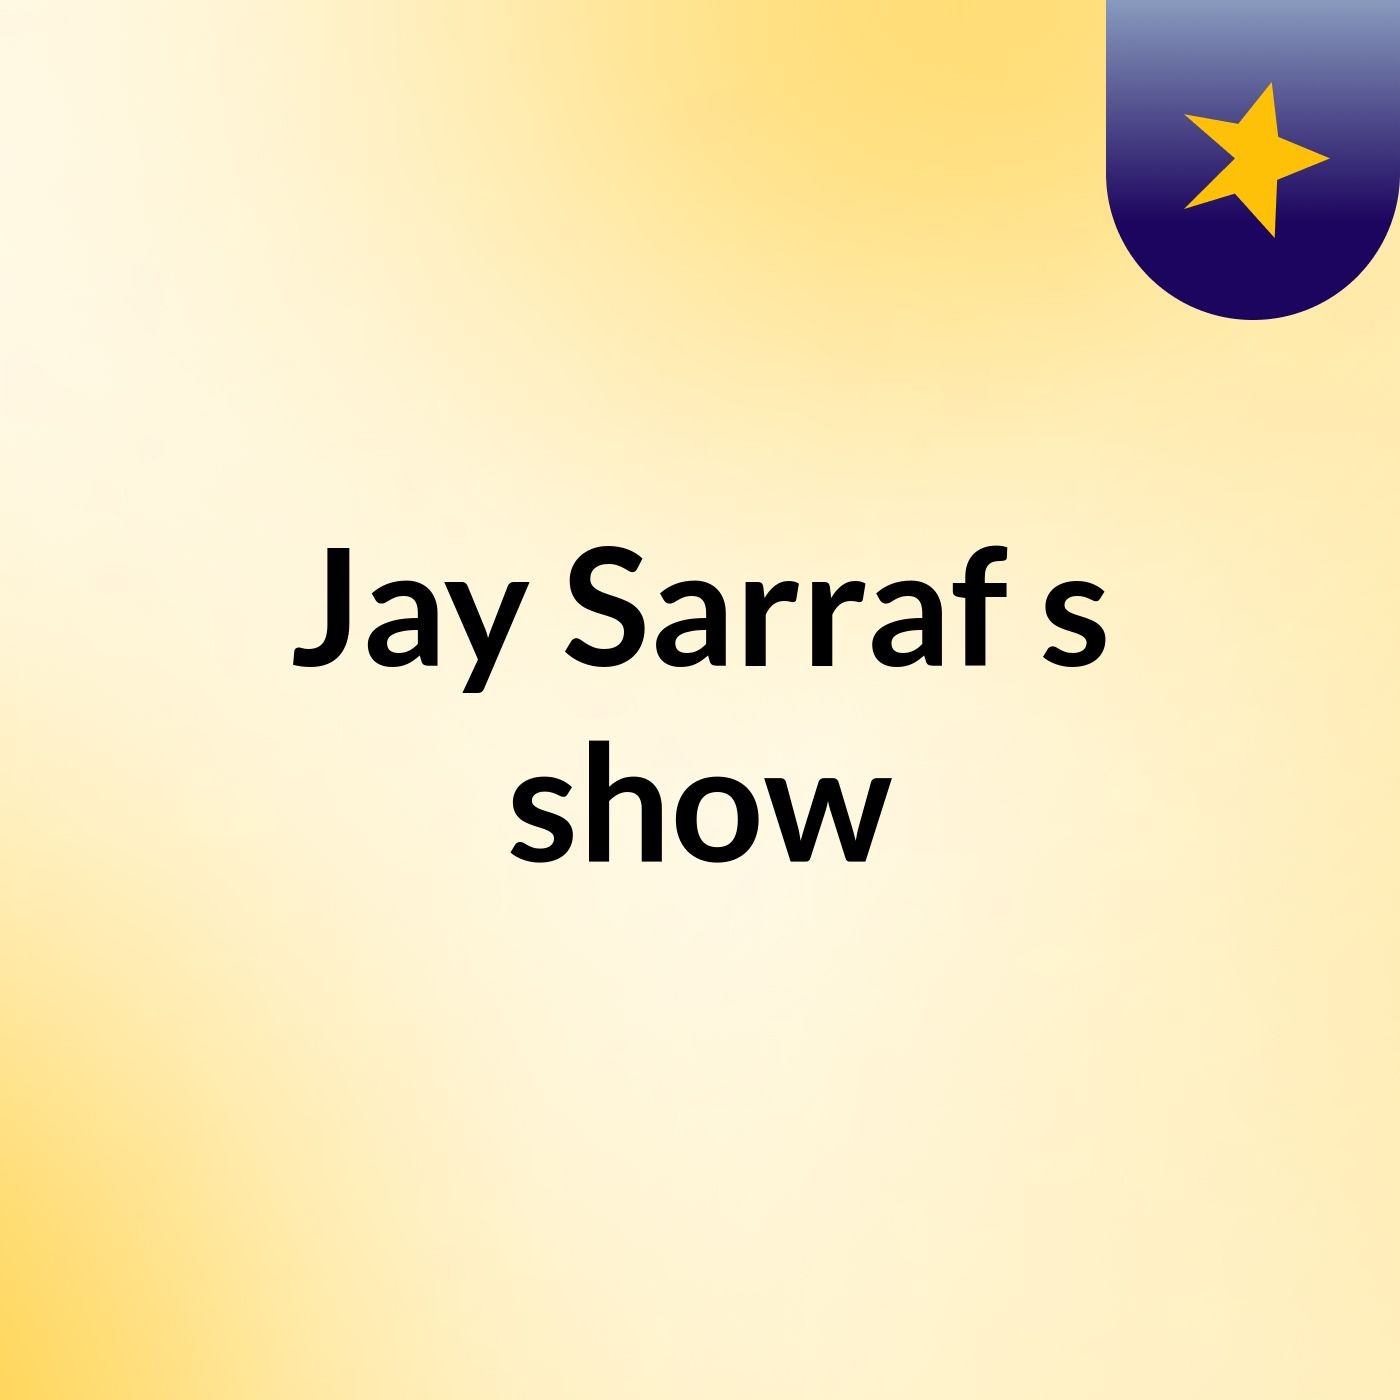 Jay Sarraf's show